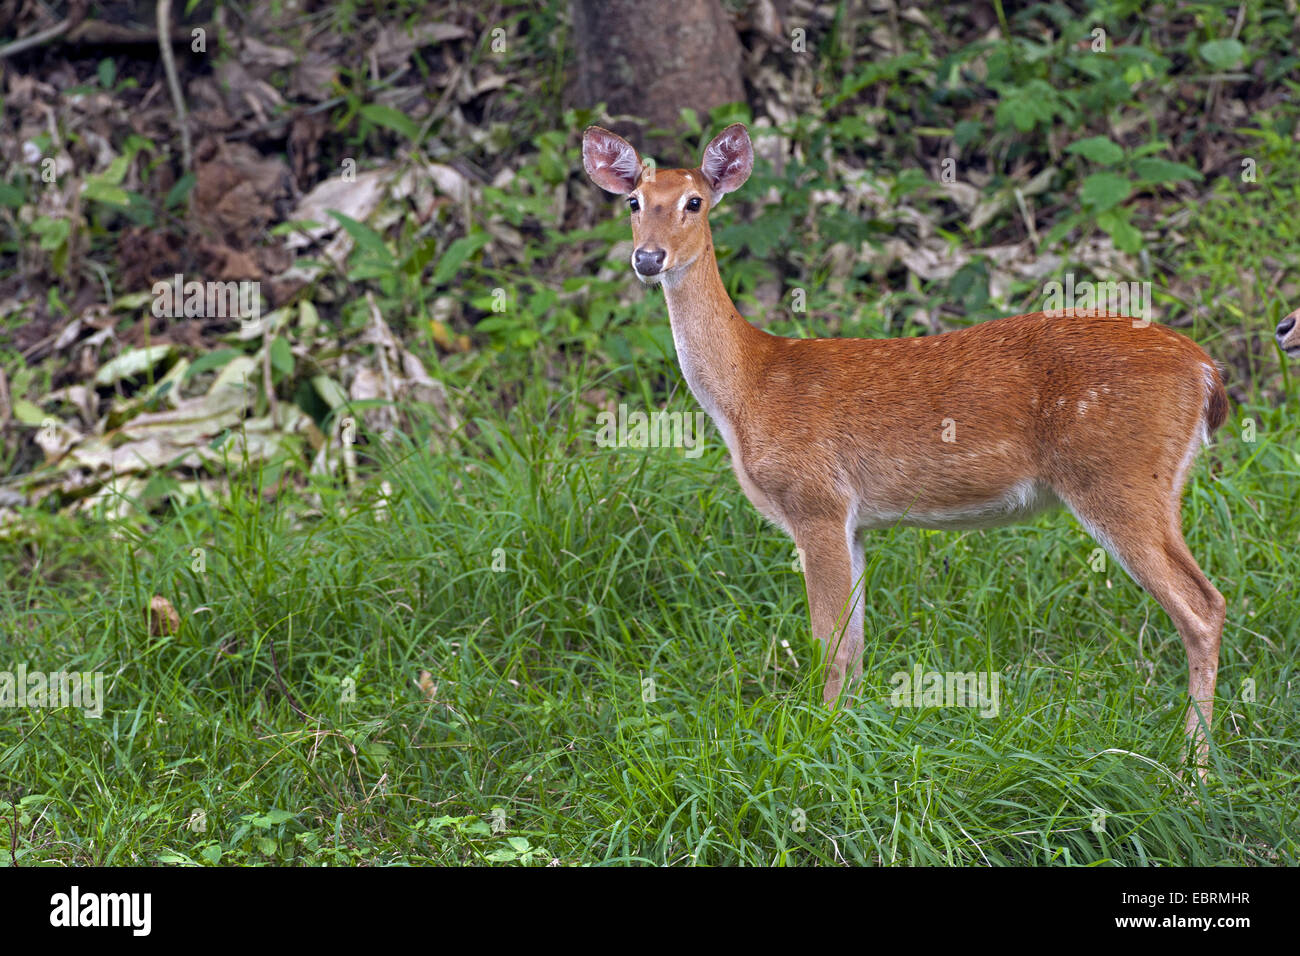 Thamin, Brow-antlered deer, Eld's deer (Panolia eldii, Rucervus eldii, Cervus eldii), standing in a meadow, Thailand, Huai Kha Khaeng Wildlife Sanctua Stock Photo